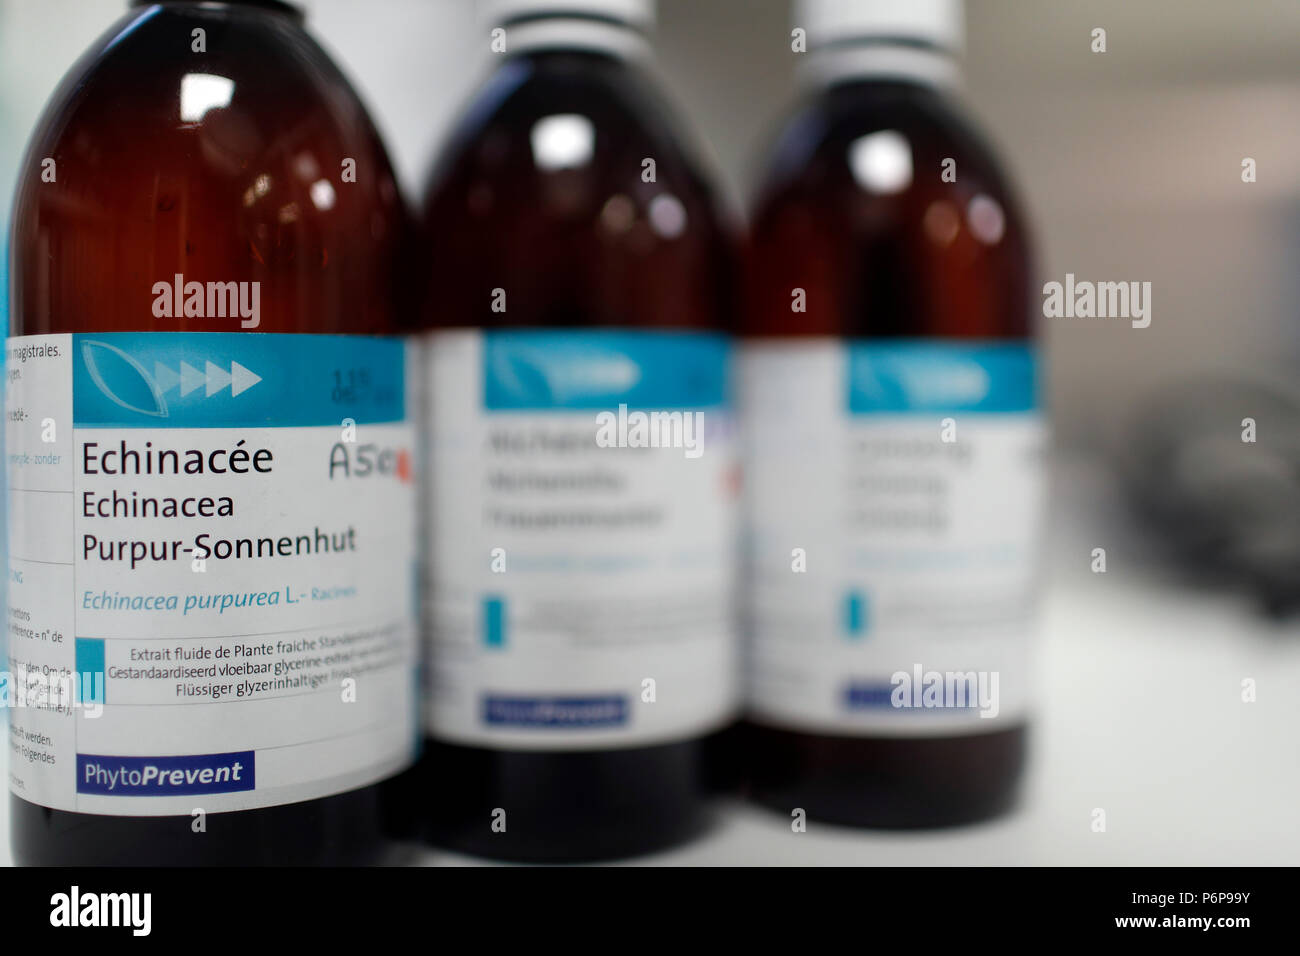 Farmacia. Oli essenziali in bottiglie di vetro. La Francia. Foto Stock